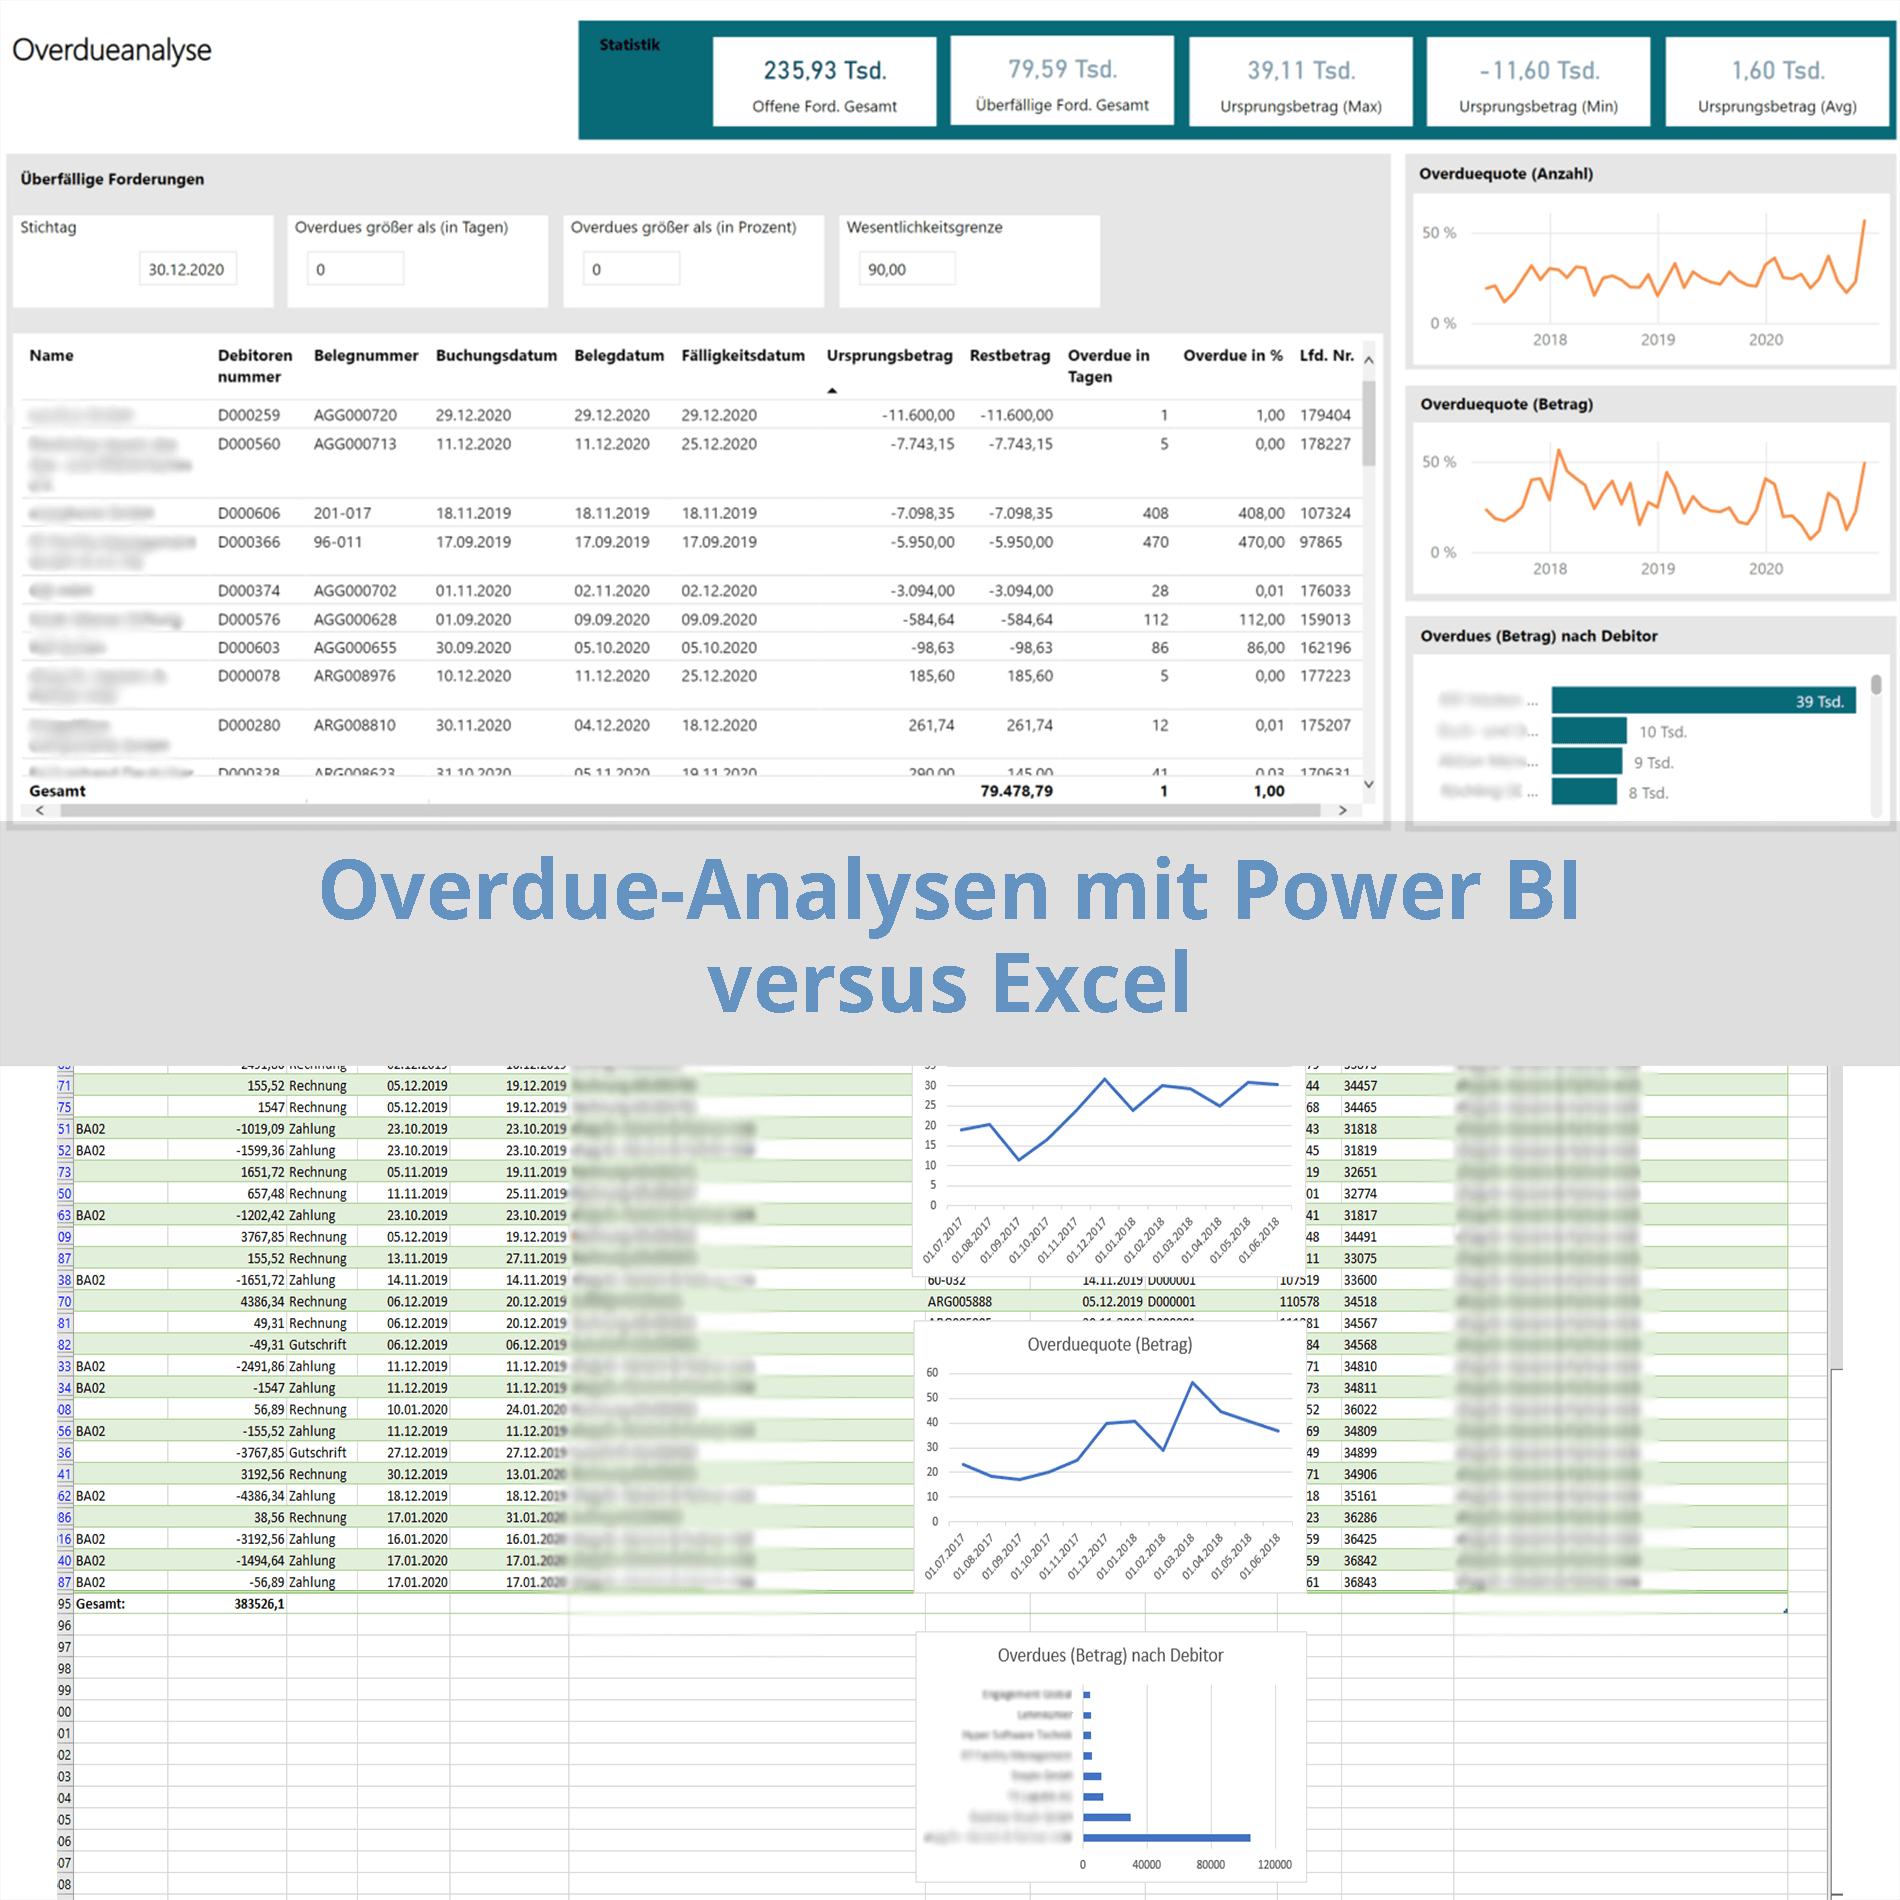 Vergleich Overdueanalysen mit MS Power BI versus Excel